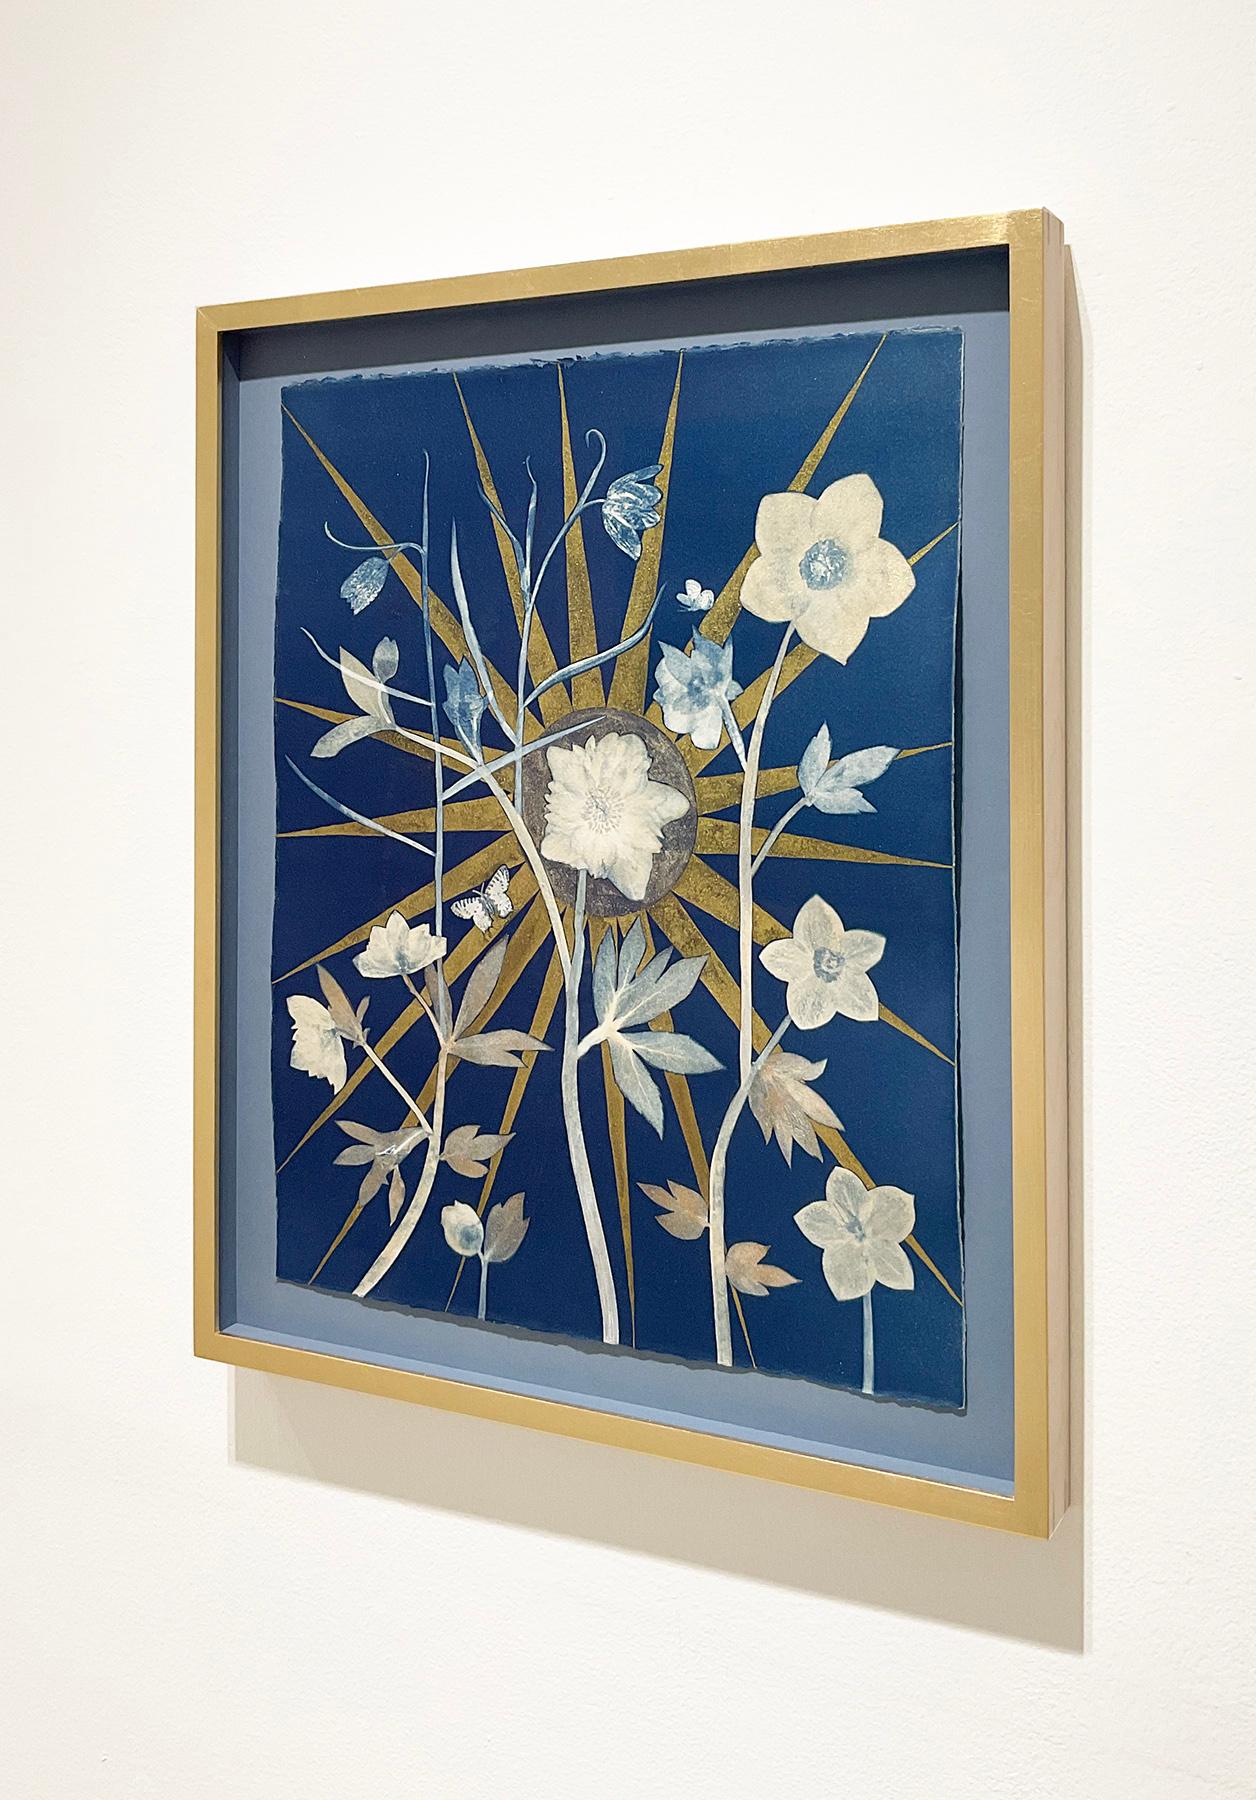 Hellebore, Center Star (Still Life of Golden Sunburst, White Flowers on Indigo) - Painting by Julia Whitney Barnes